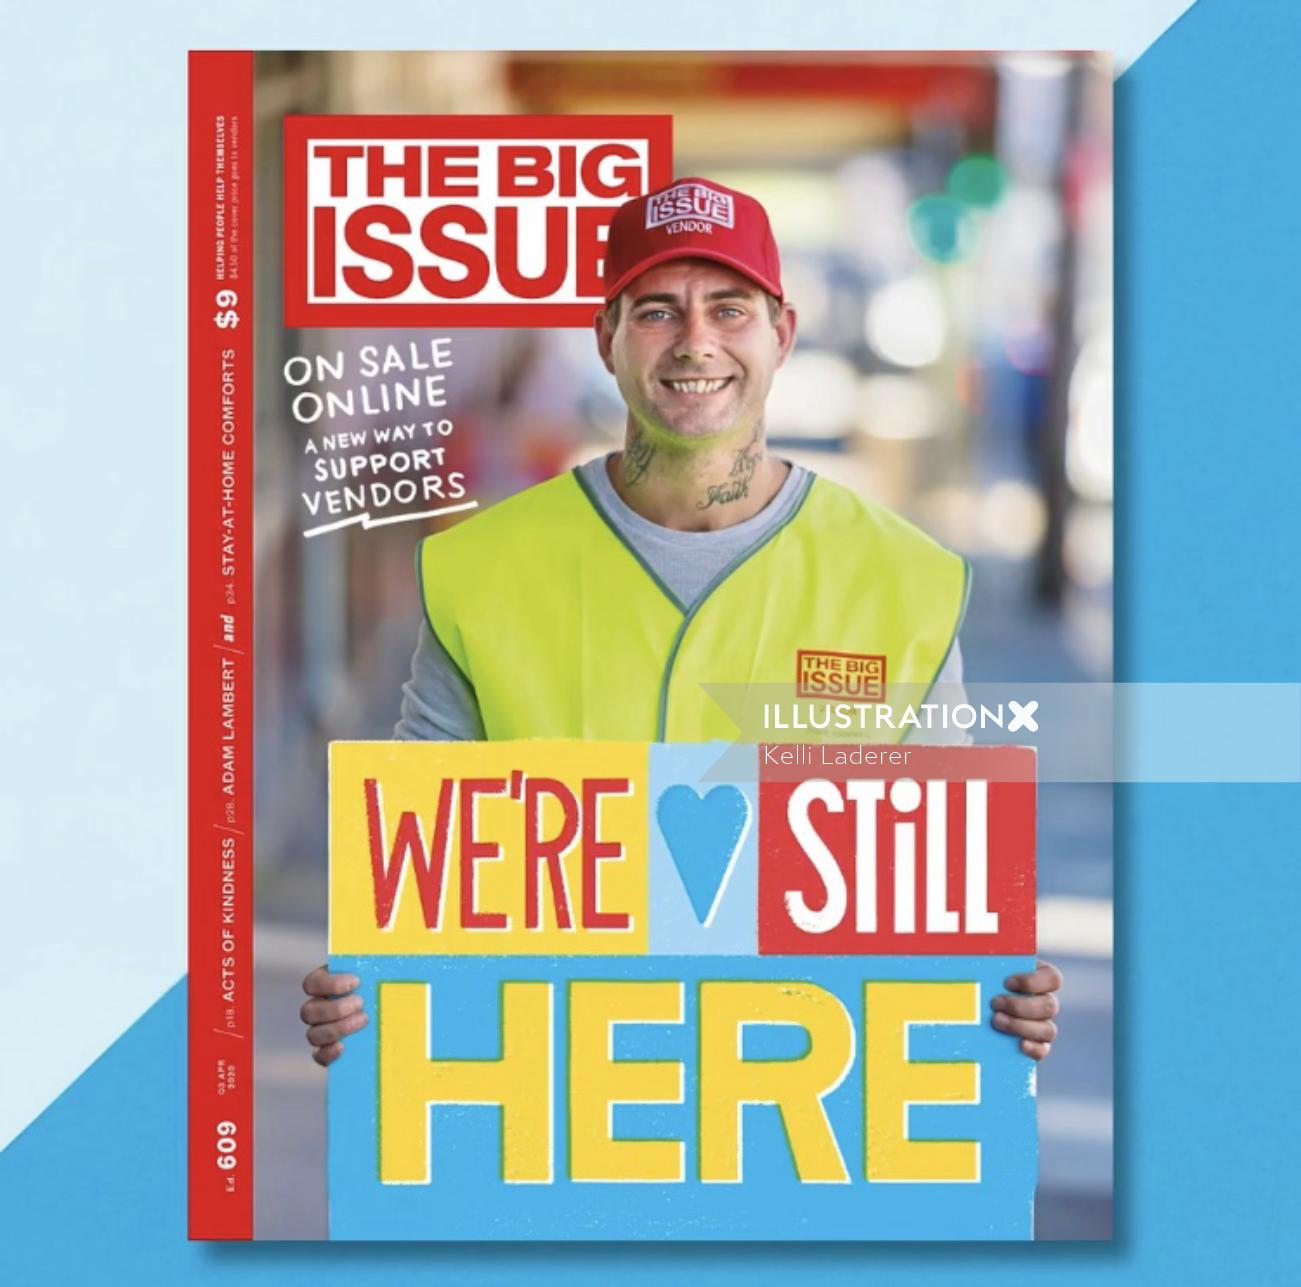 Todavía estábamos aquí letras a mano para la portada de la revista The Big Issue